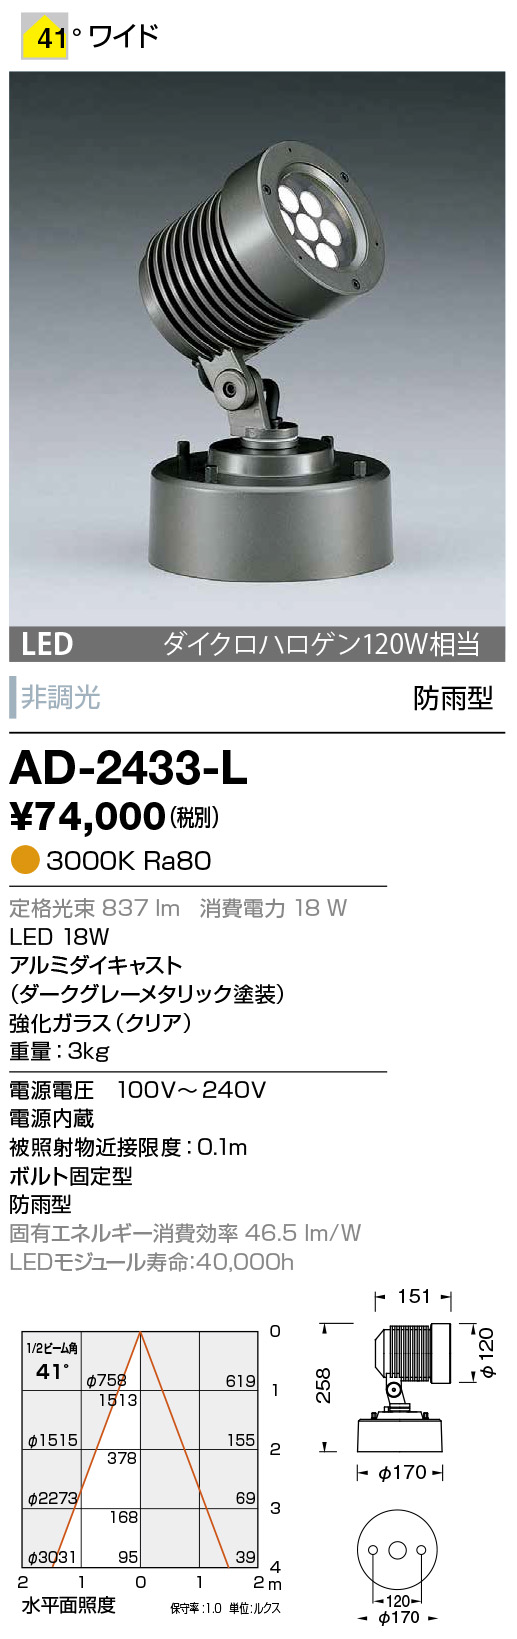 山田照明 山田照明 Compact Spot Neo（コンパクト・スポット・ネオ） 屋外用スポットライト 黒色 LED（昼白色） 36度 AD-3145 -L